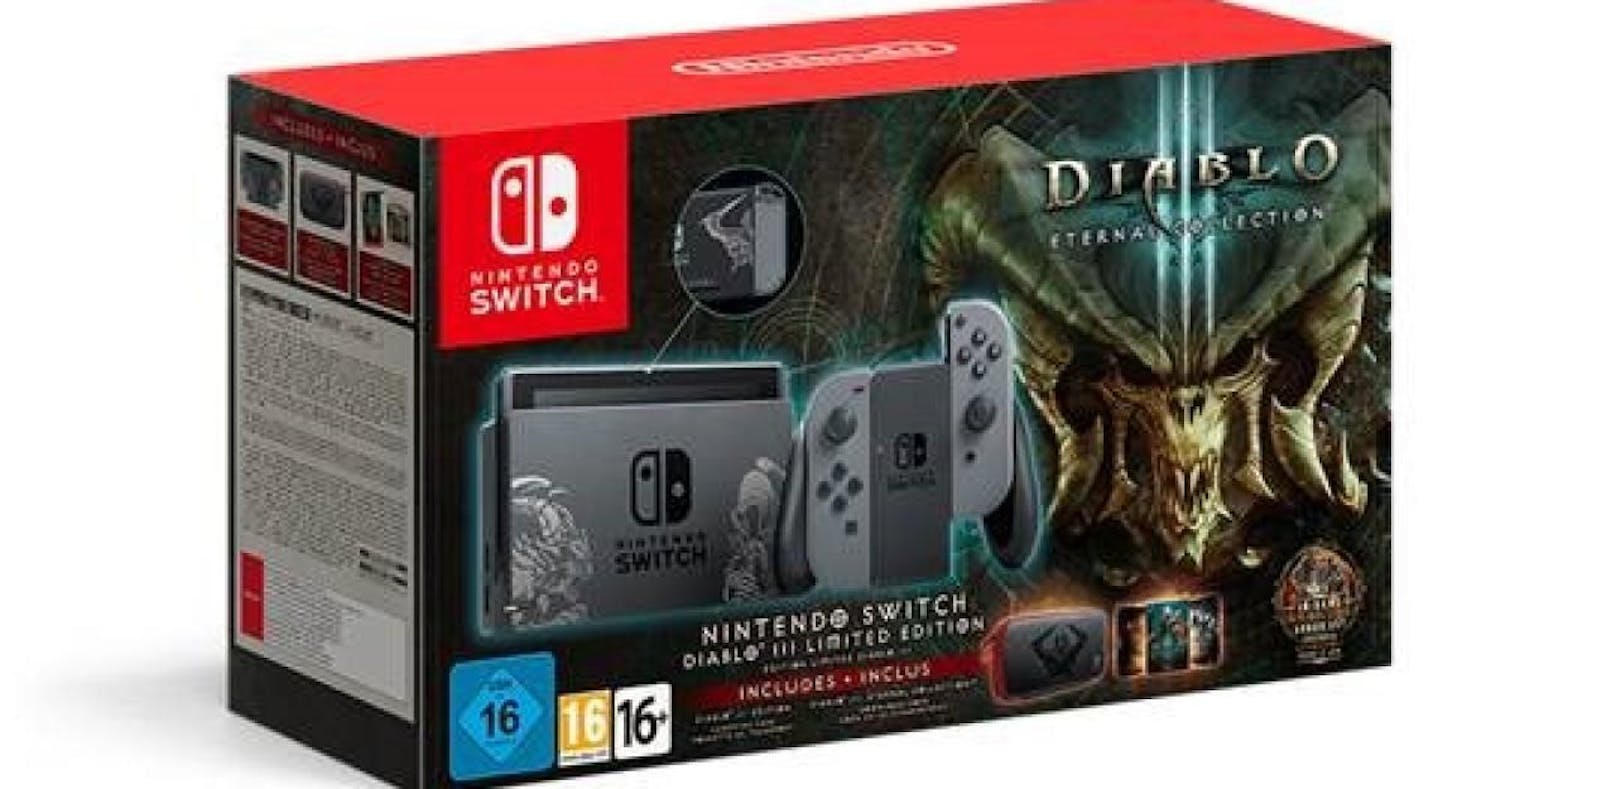 Nintendo Switch im 'Diablo III'-Design zu gewinnen